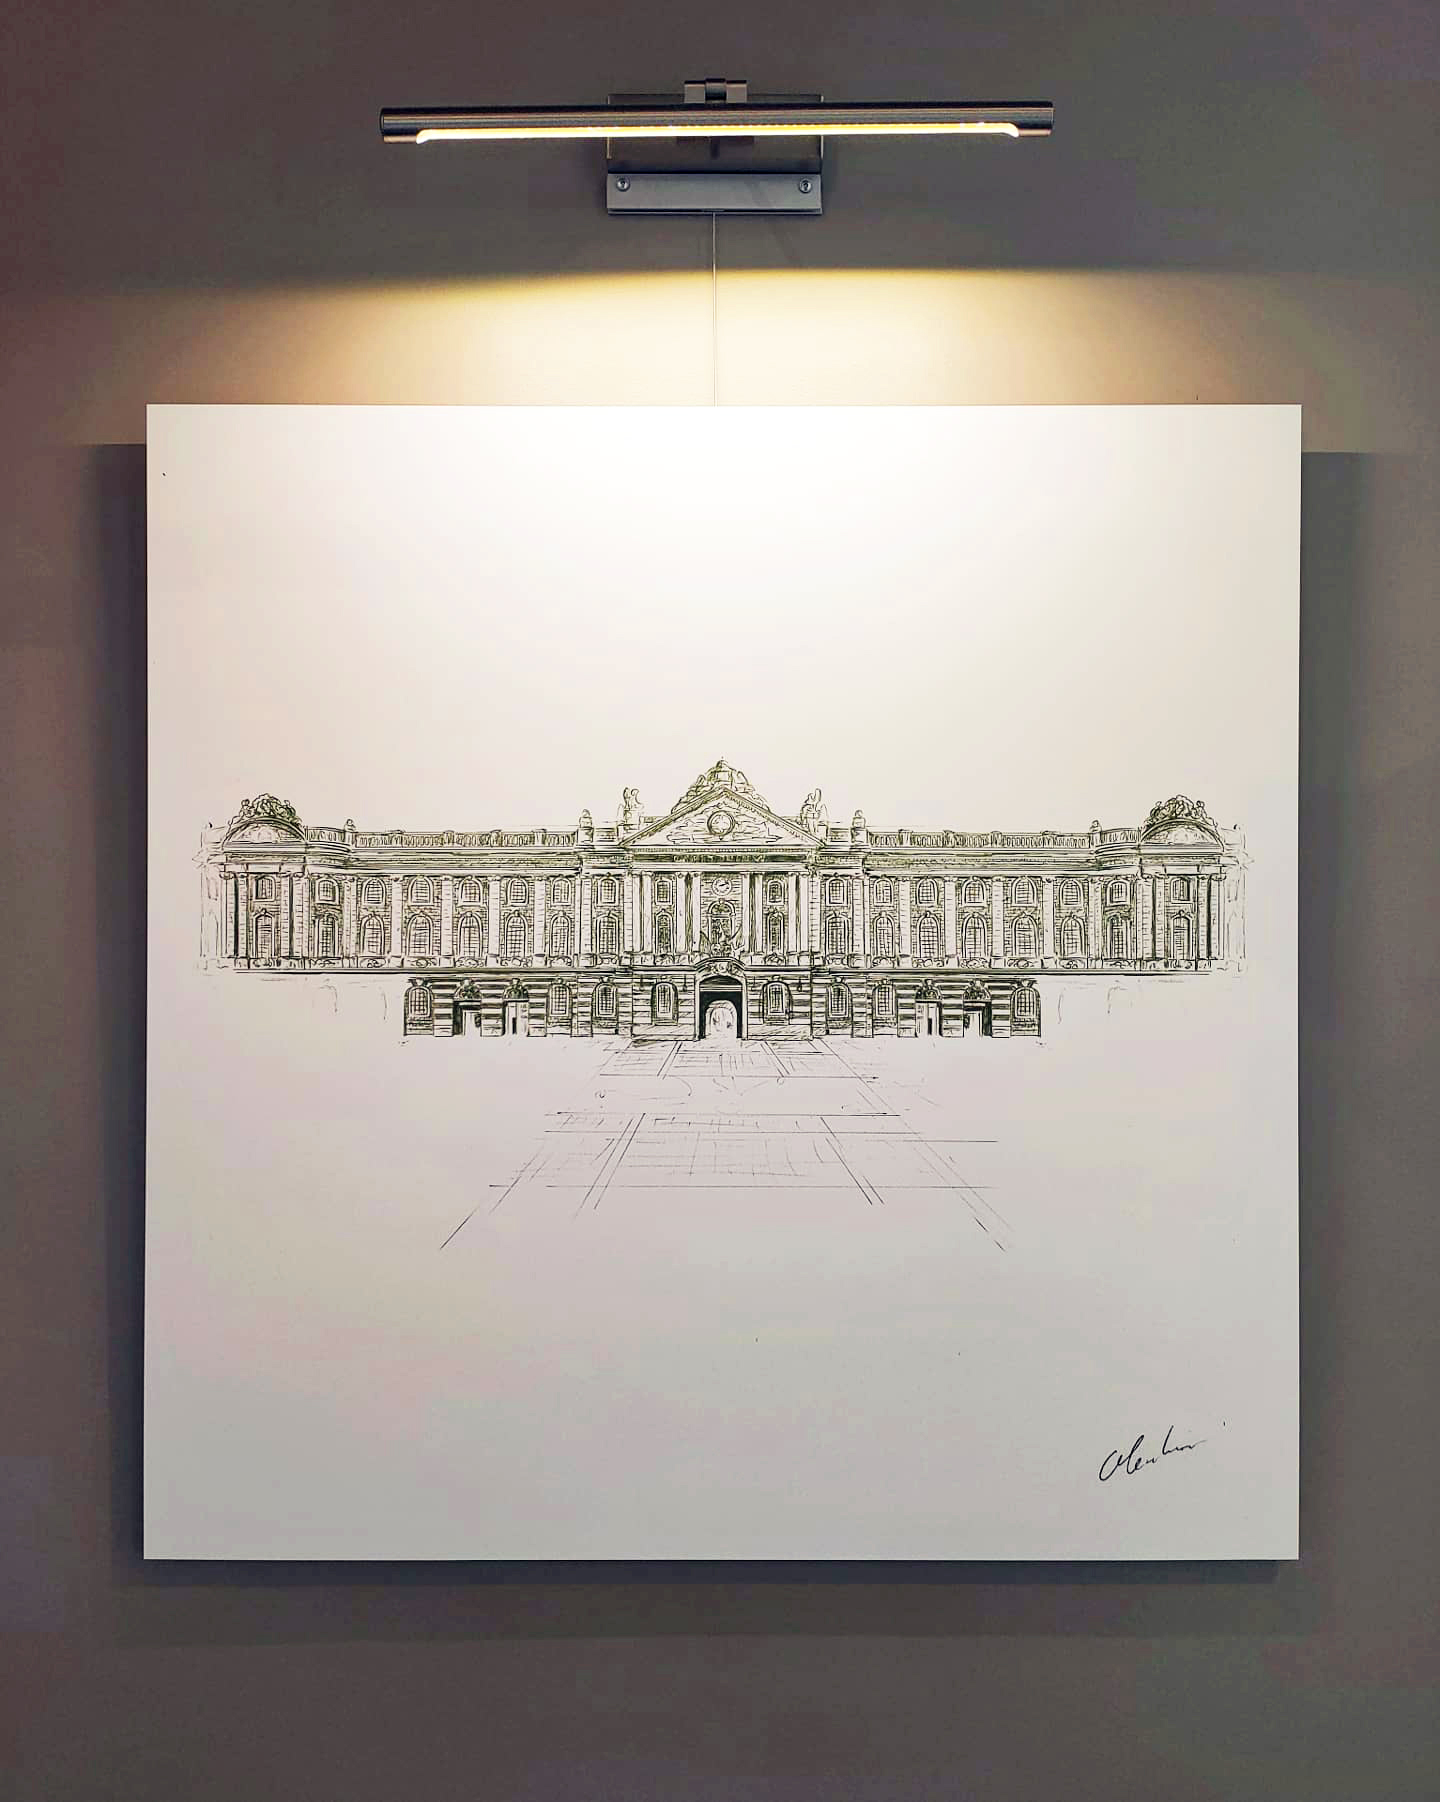 Photographie du dessin intitulé "Le Capitole de Toulouse" exposé au restaurant Le Cénacle de Toulouse